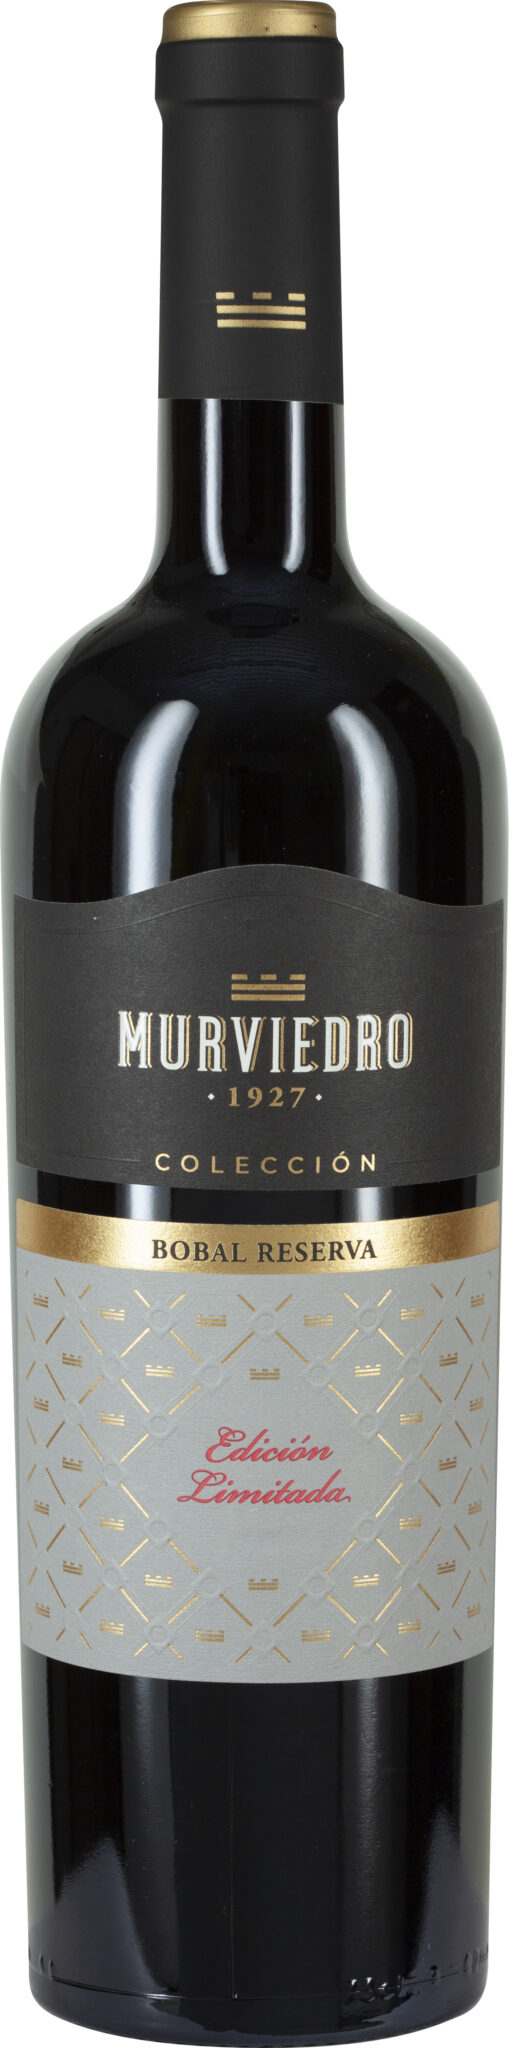 Murviedro Colección, Bobal Utiel-Requena DOP Reserva, Edición Limitada